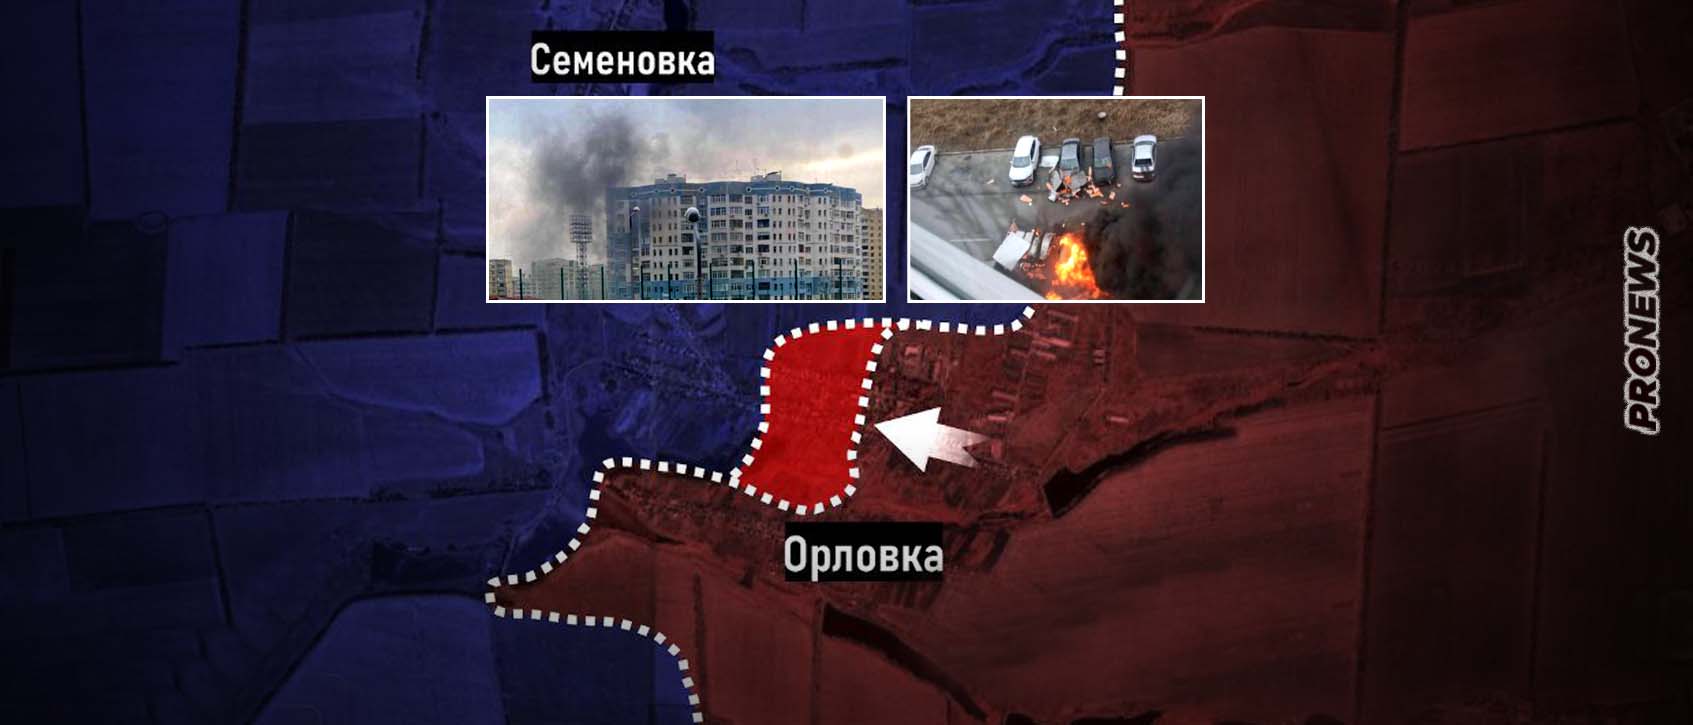 Βίντεο: Σφοδρός βομβαρδισμός του Μπέλγκοροντ από τους Ουκρανούς για να εμποδίσουν τους Ρώσους να ψηφίσουν!